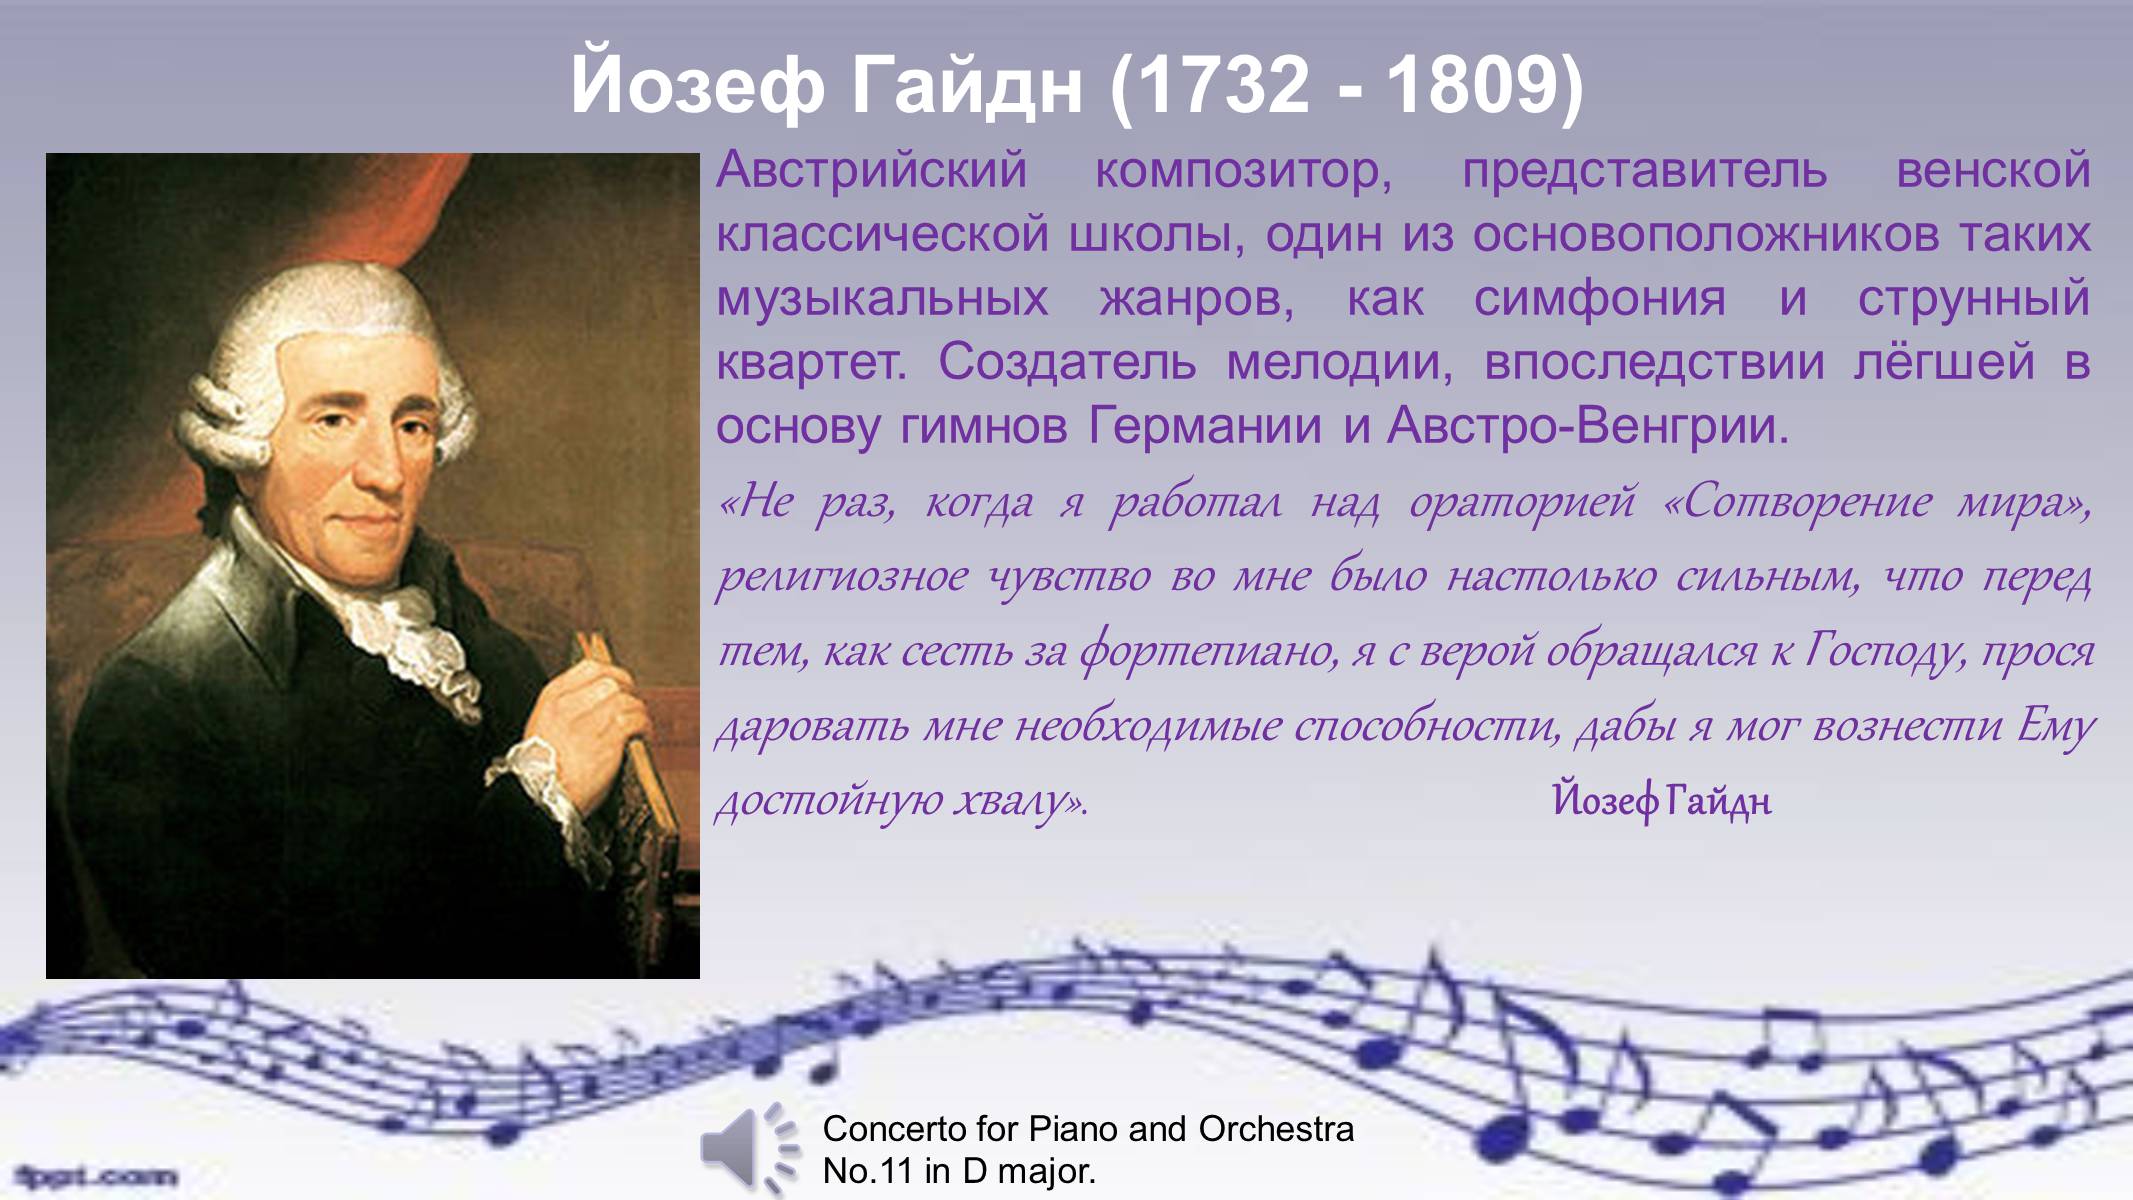 Почему гайдна называют венским классиком. Й.Гайдн - австрийский композитор.. 1761 Гайдн. Йозеф Гайдн 1 факт из жизни композитора.